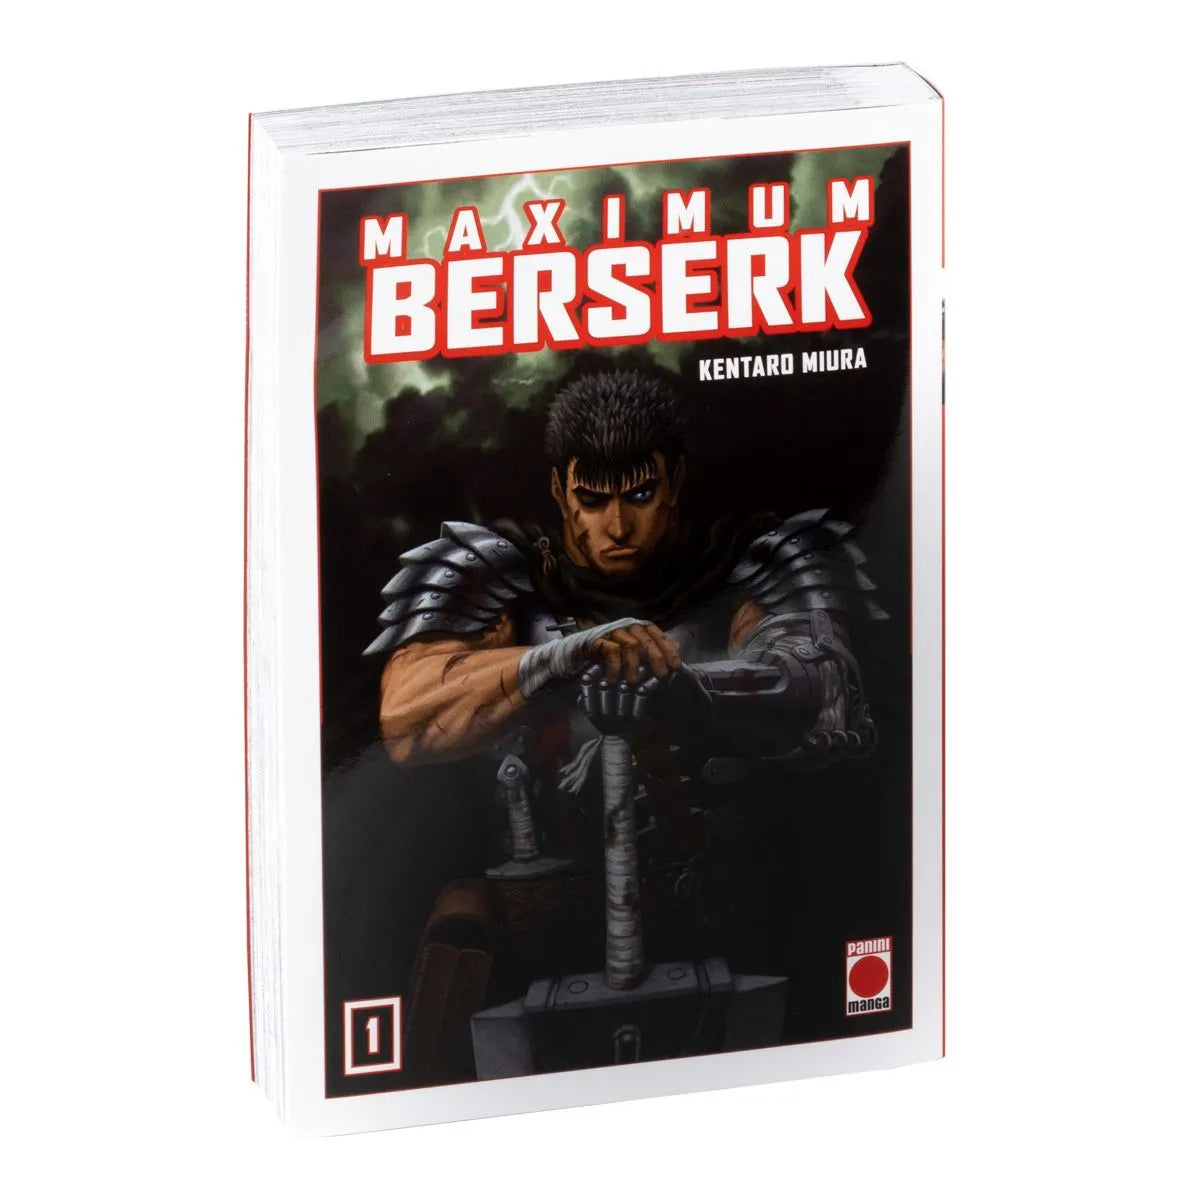 [MANGA] Berserk - Edición Maximum 1 (Kentaro Miura) * PRIMERA EDICIÓN (DESCATALOGADA)